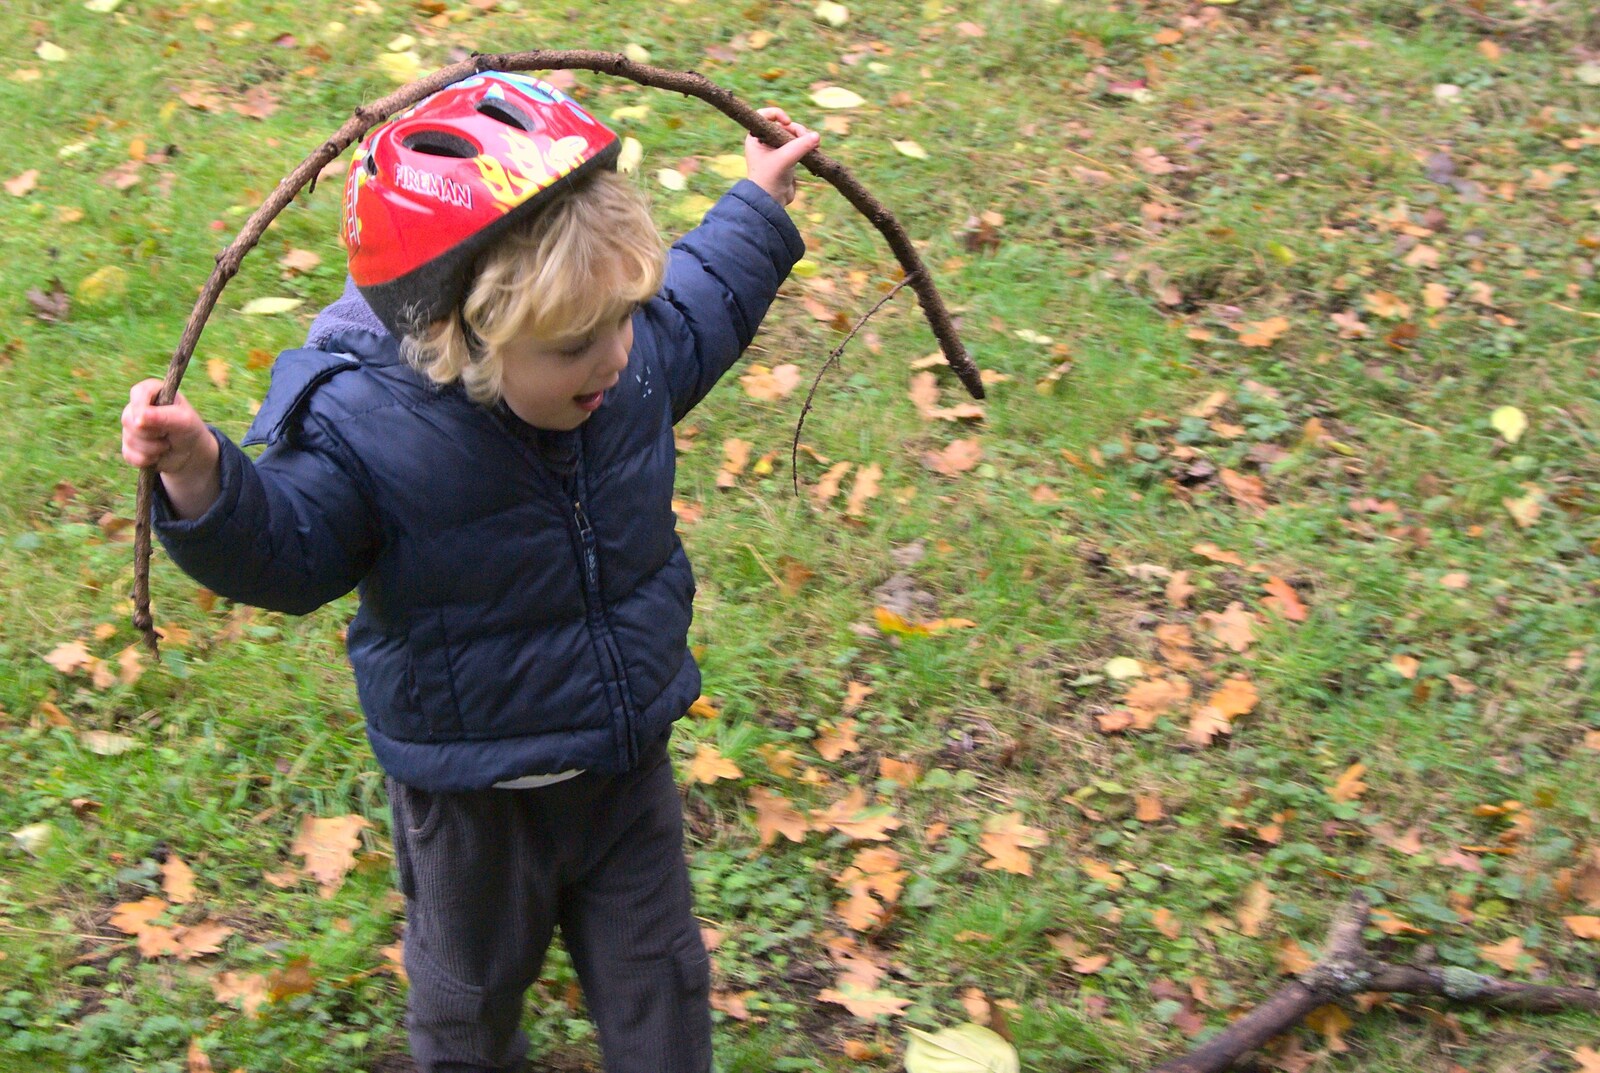 Fred's bendy stick from Autumn in Thornham Estate, Thornham, Suffolk - 6th November 2011